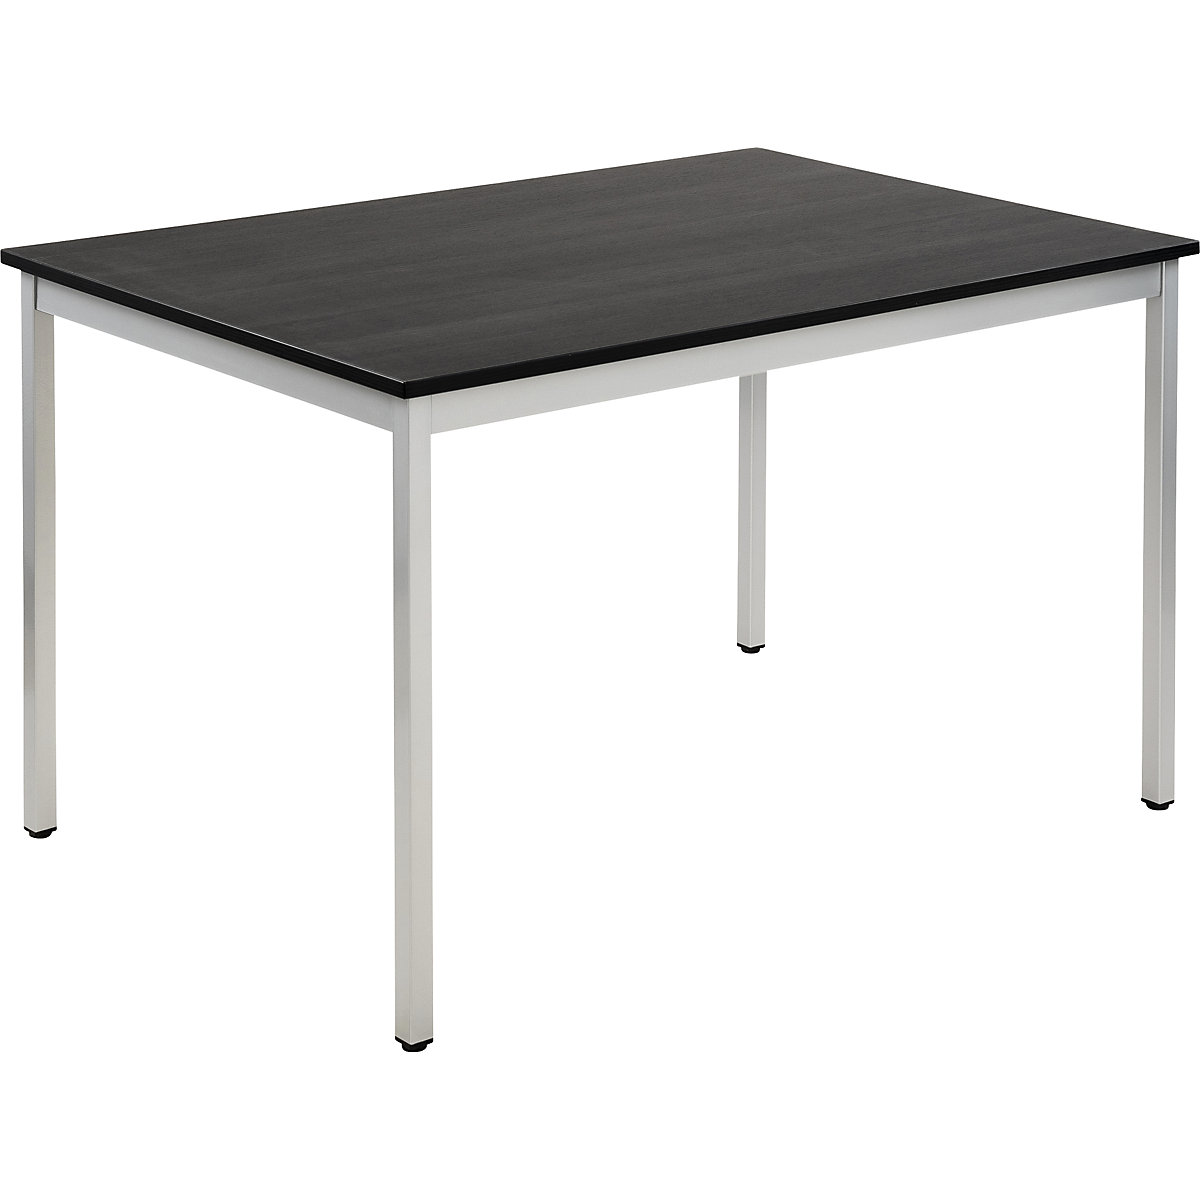 Víceúčelový stůl – eurokraft basic, obdélníkový tvar, š x v 1200 x 740 mm, hloubka 800 mm, deska v jasanovém dekoru tmavá šedá, podstavec v barvě bílý hliník-13